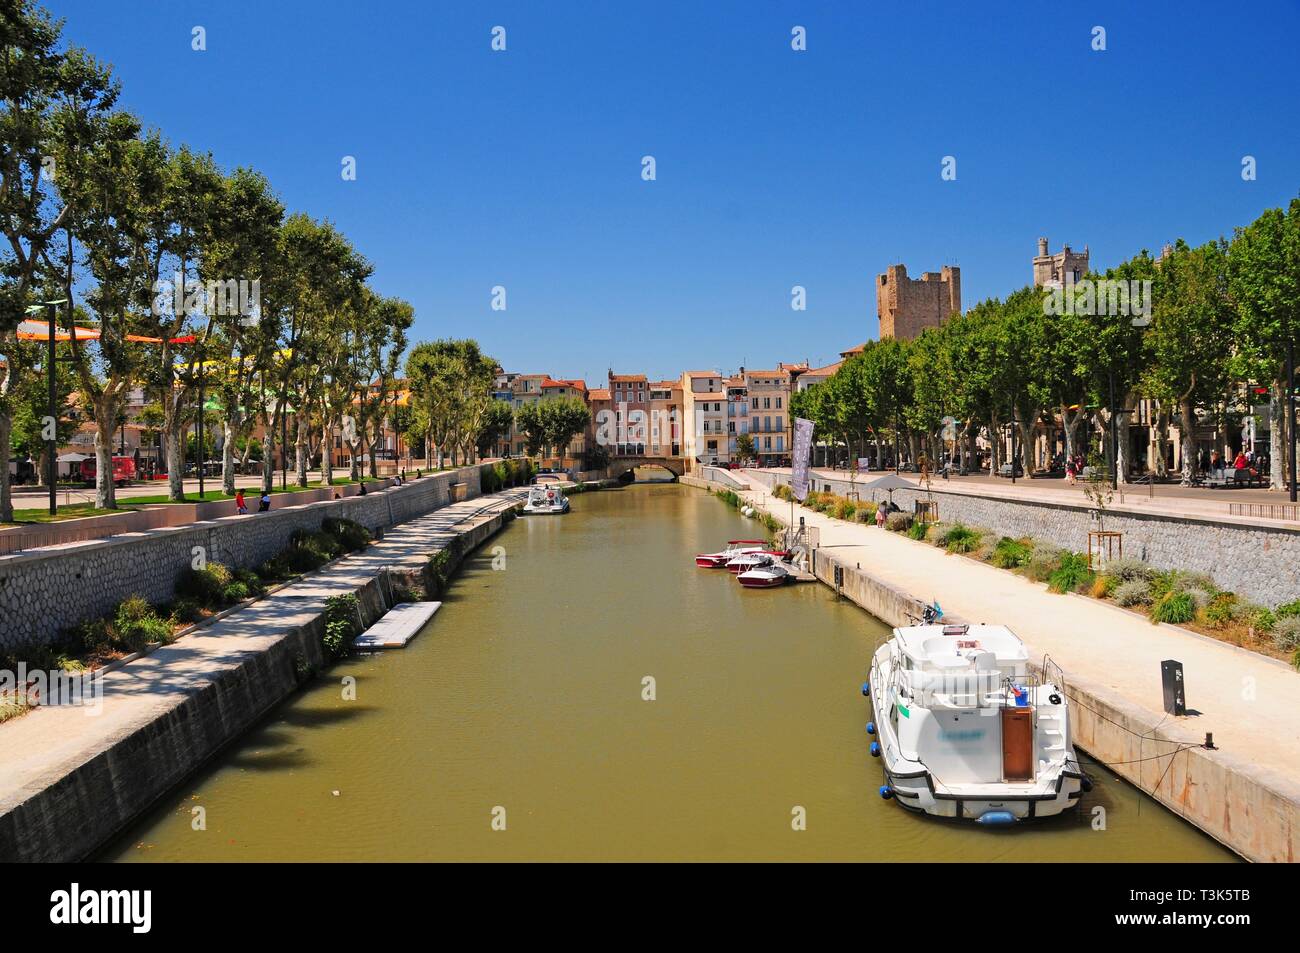 Canal du Midi, narbonne, aude Ministère de la région de l'Occitanie, France, Europe Banque D'Images